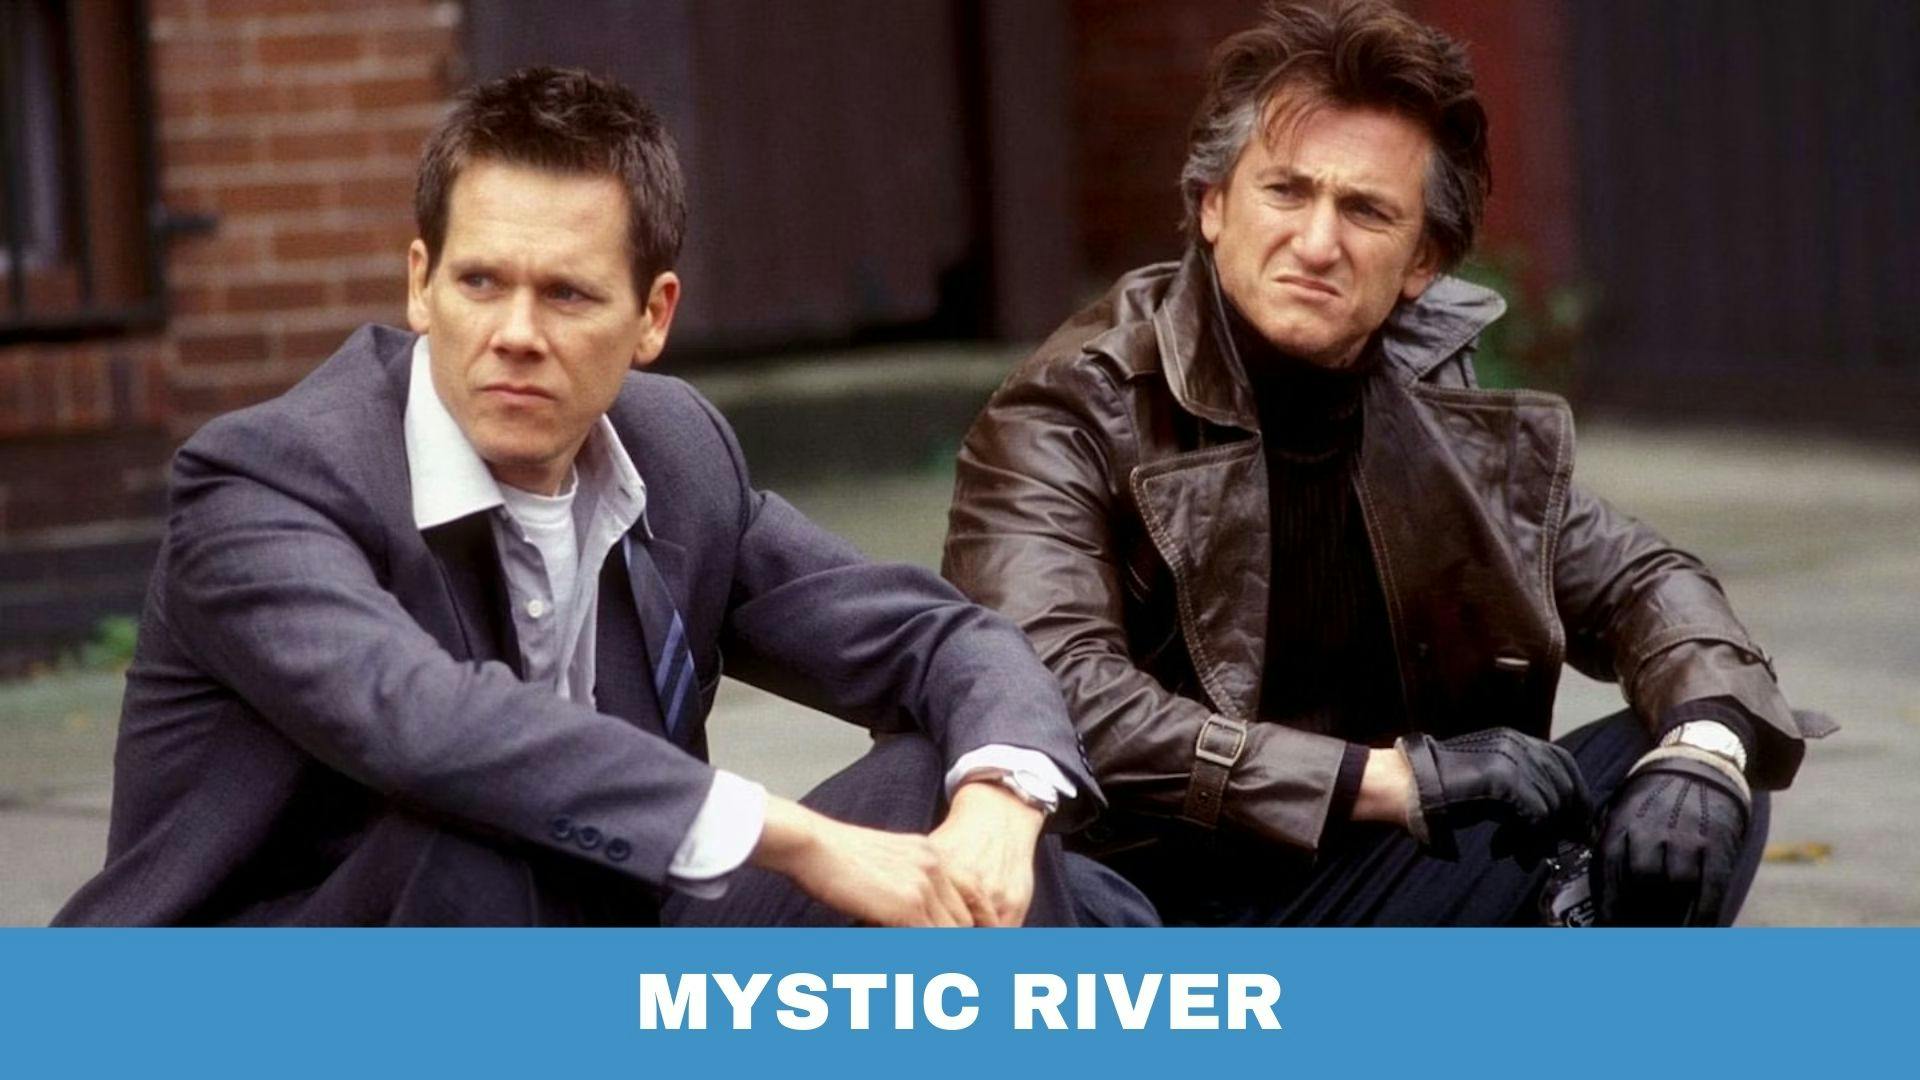 poster du film Mystic River avec un titre sur fond bleu